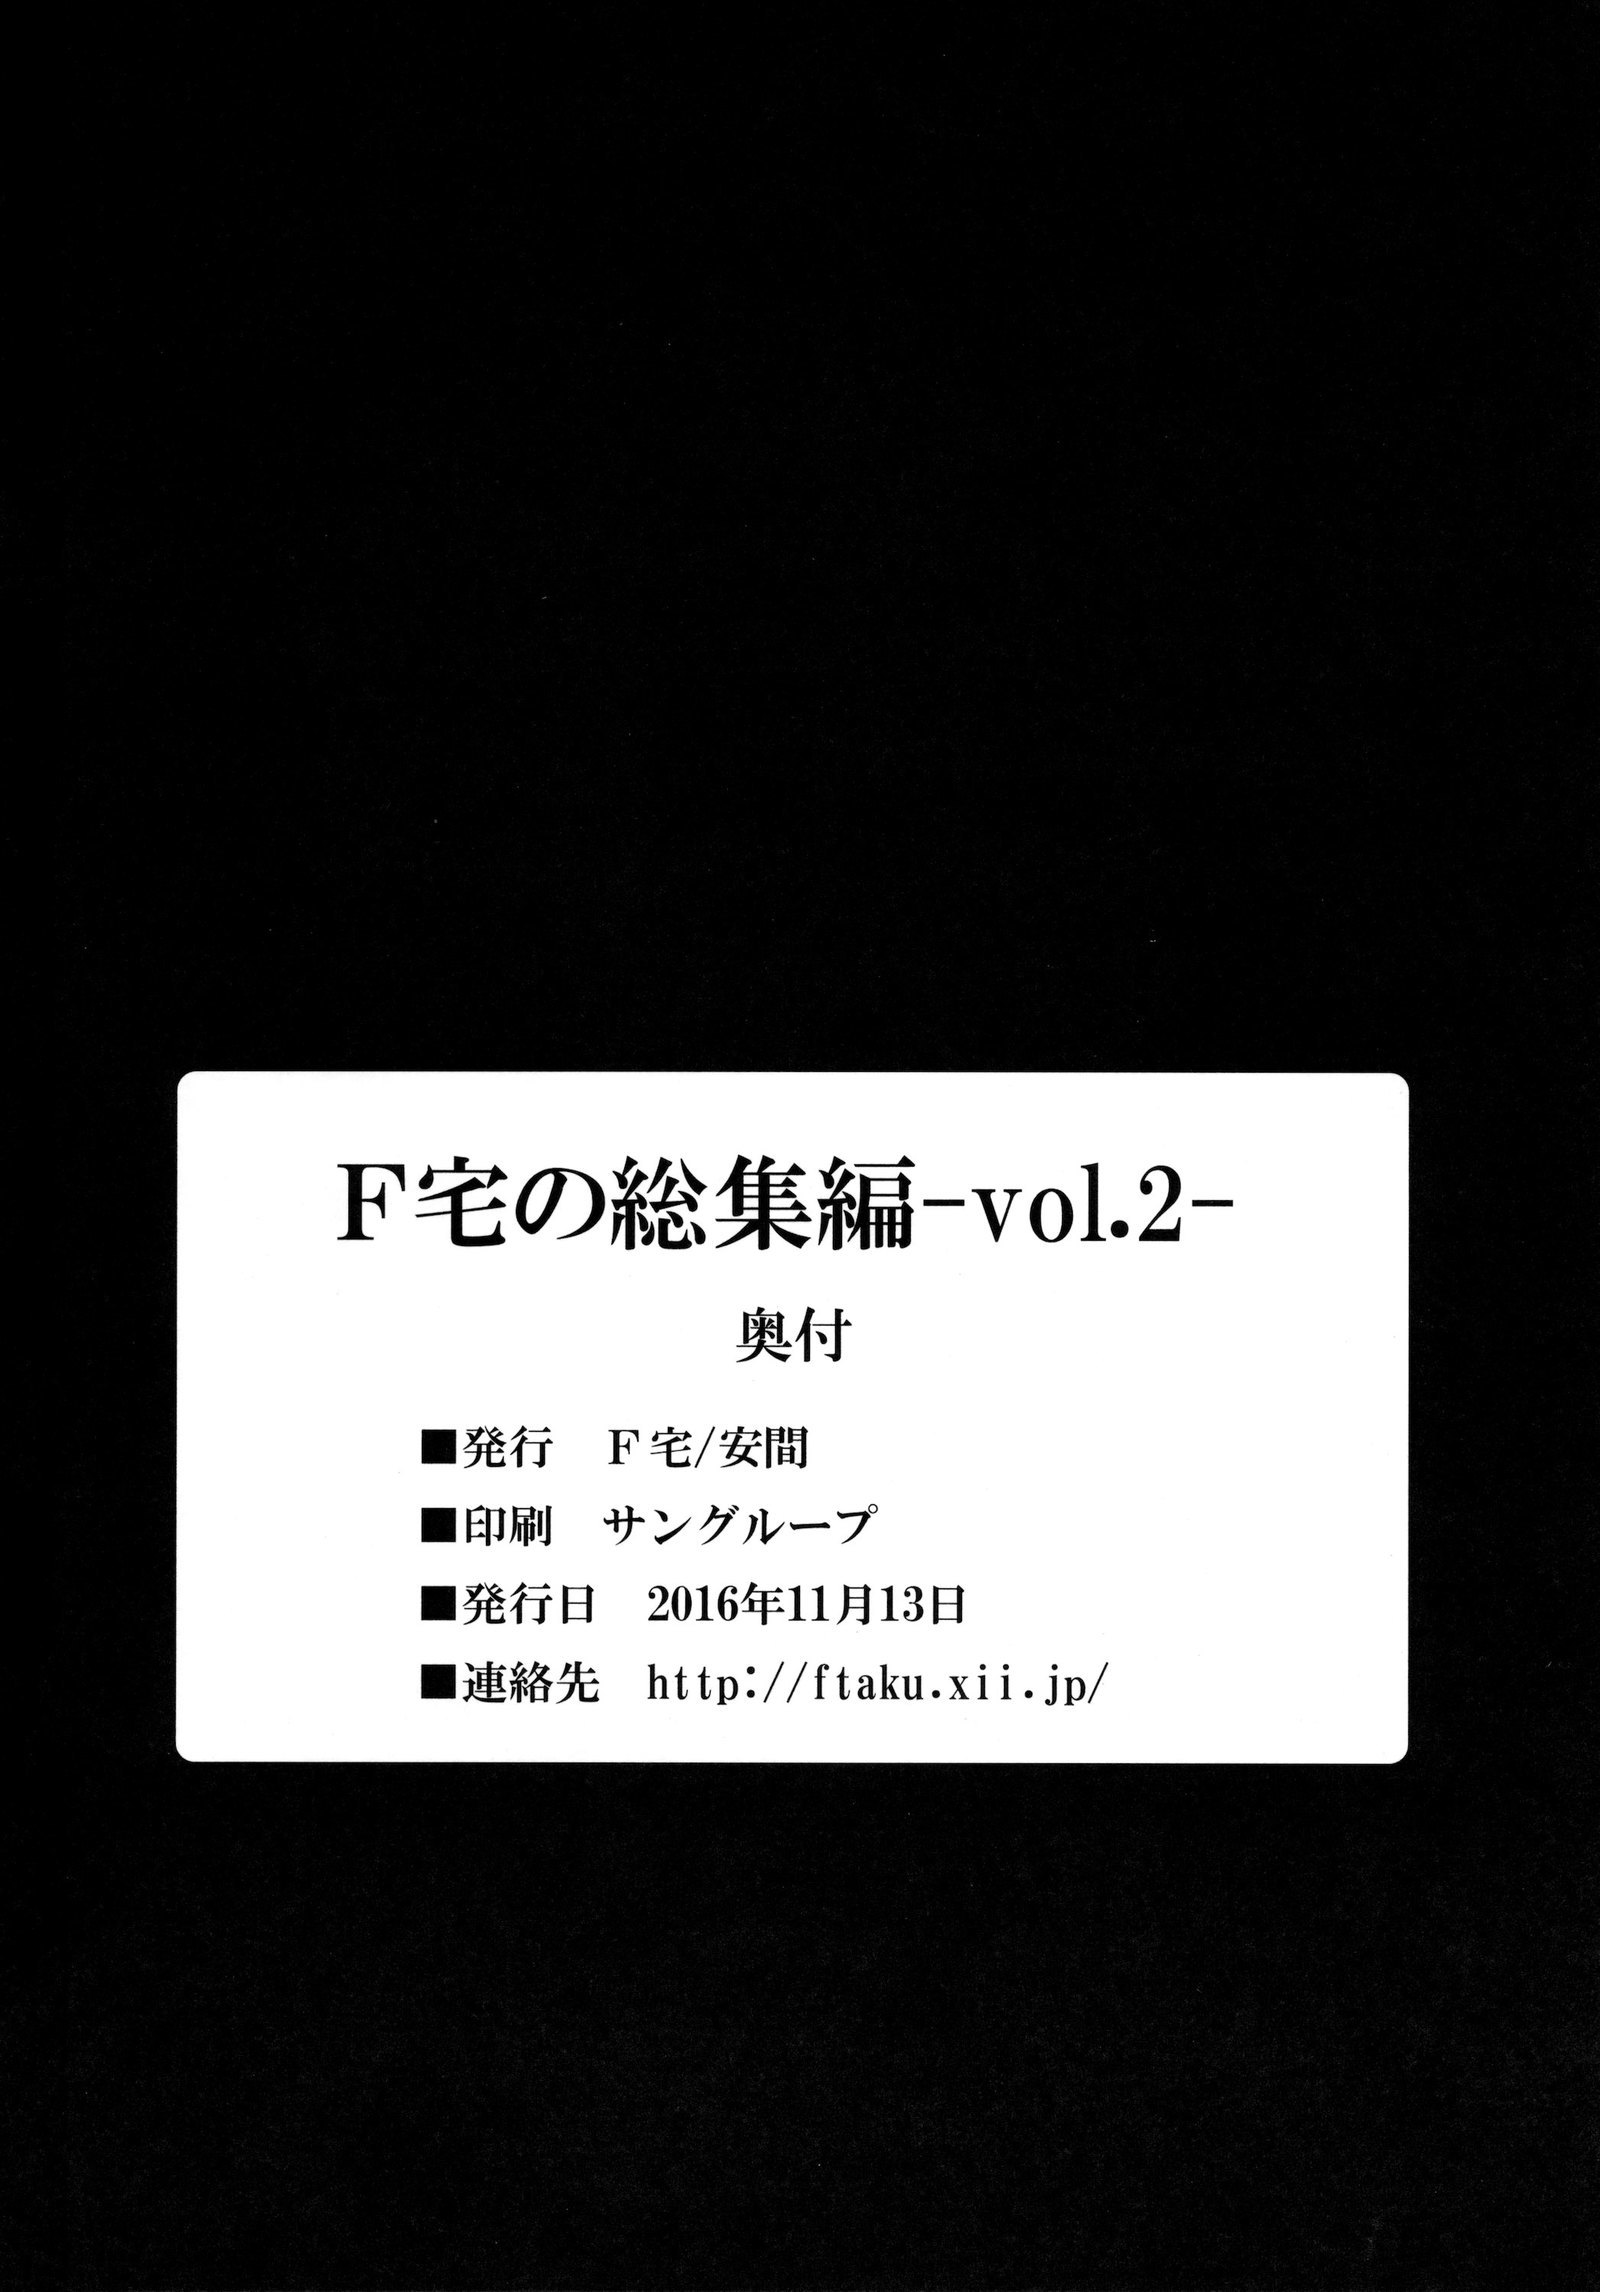 Fたくのそうしゅうへん-vol.2-